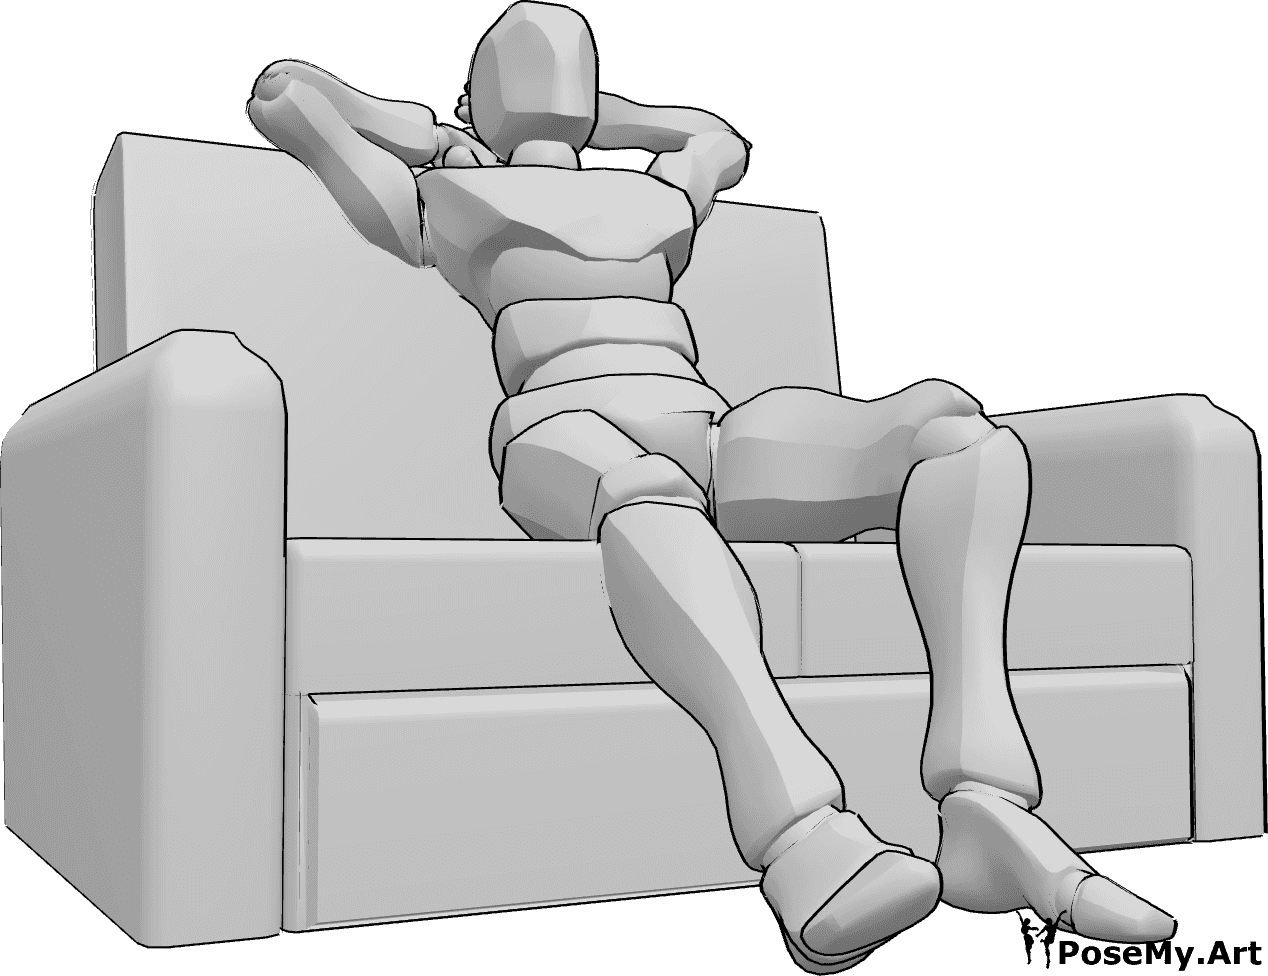 Riferimento alle pose- Posizione seduta sul divano - L'uomo è comodamente seduto sul divano e si stiracchia le gambe e le braccia.